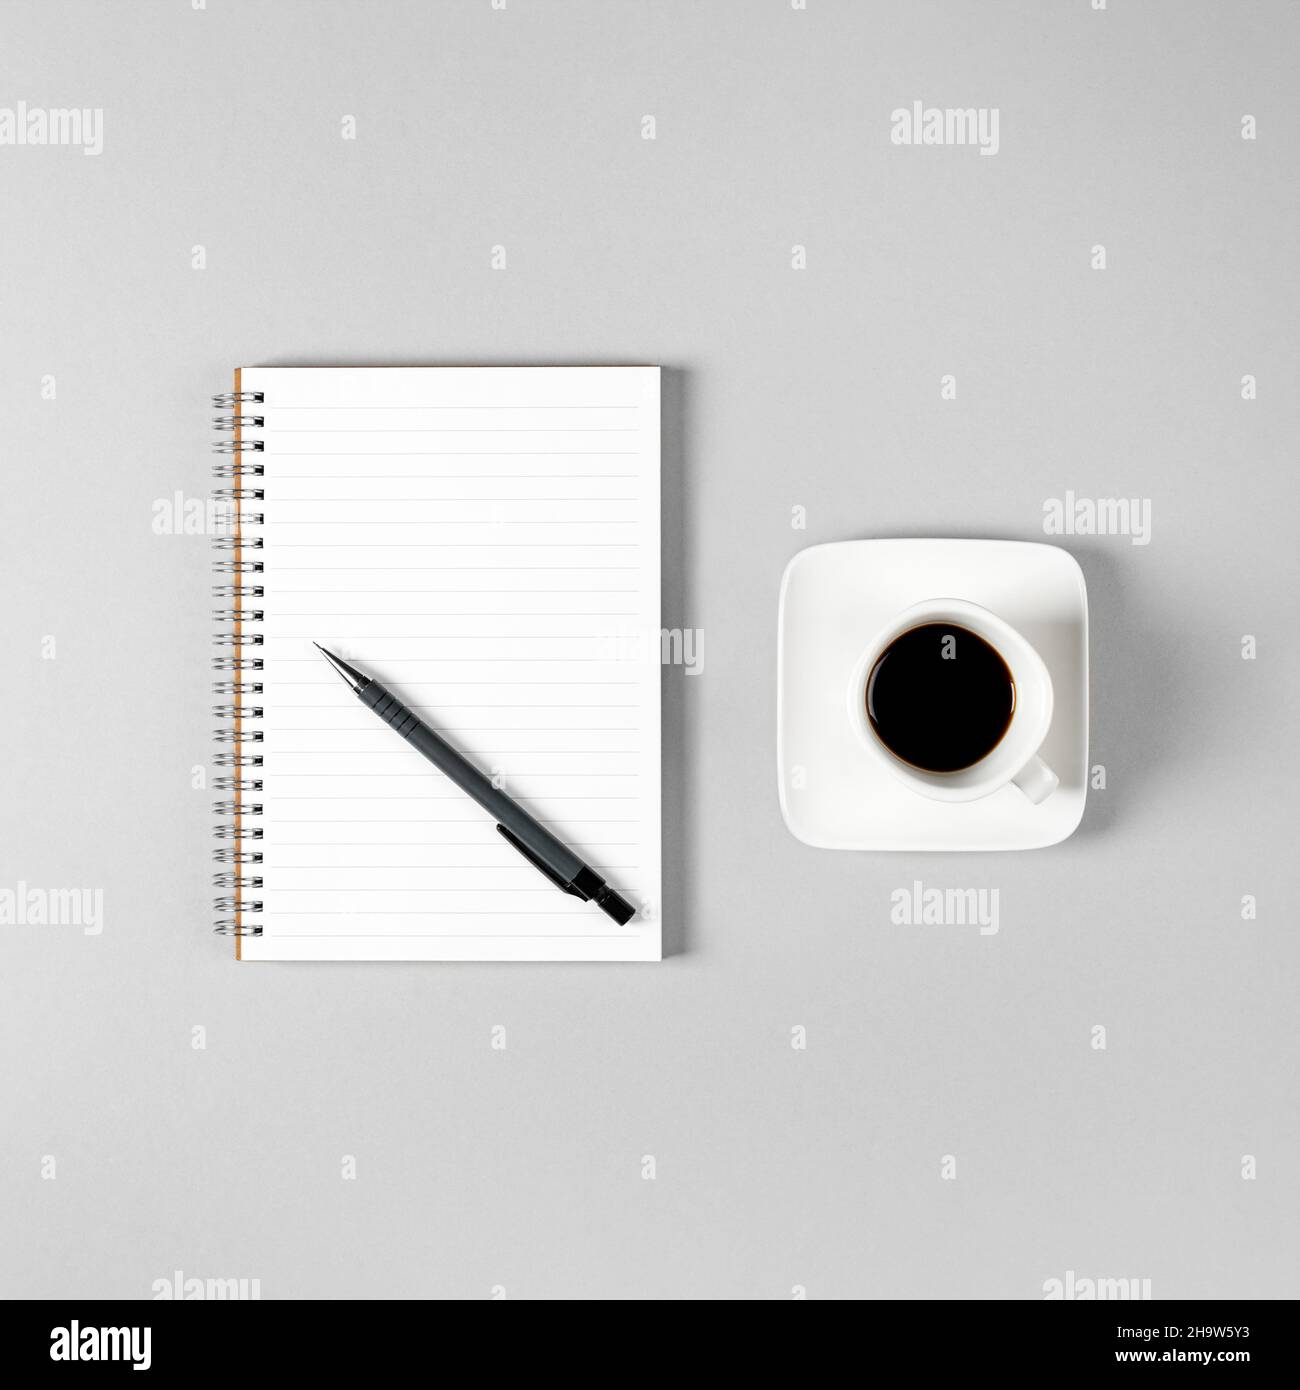 Blocco note, penna e una tazza di caffè isolato su sfondo grigio chiaro. Blocco note con spazio di copia. Ufficio, lavoro, stile discreto Foto Stock